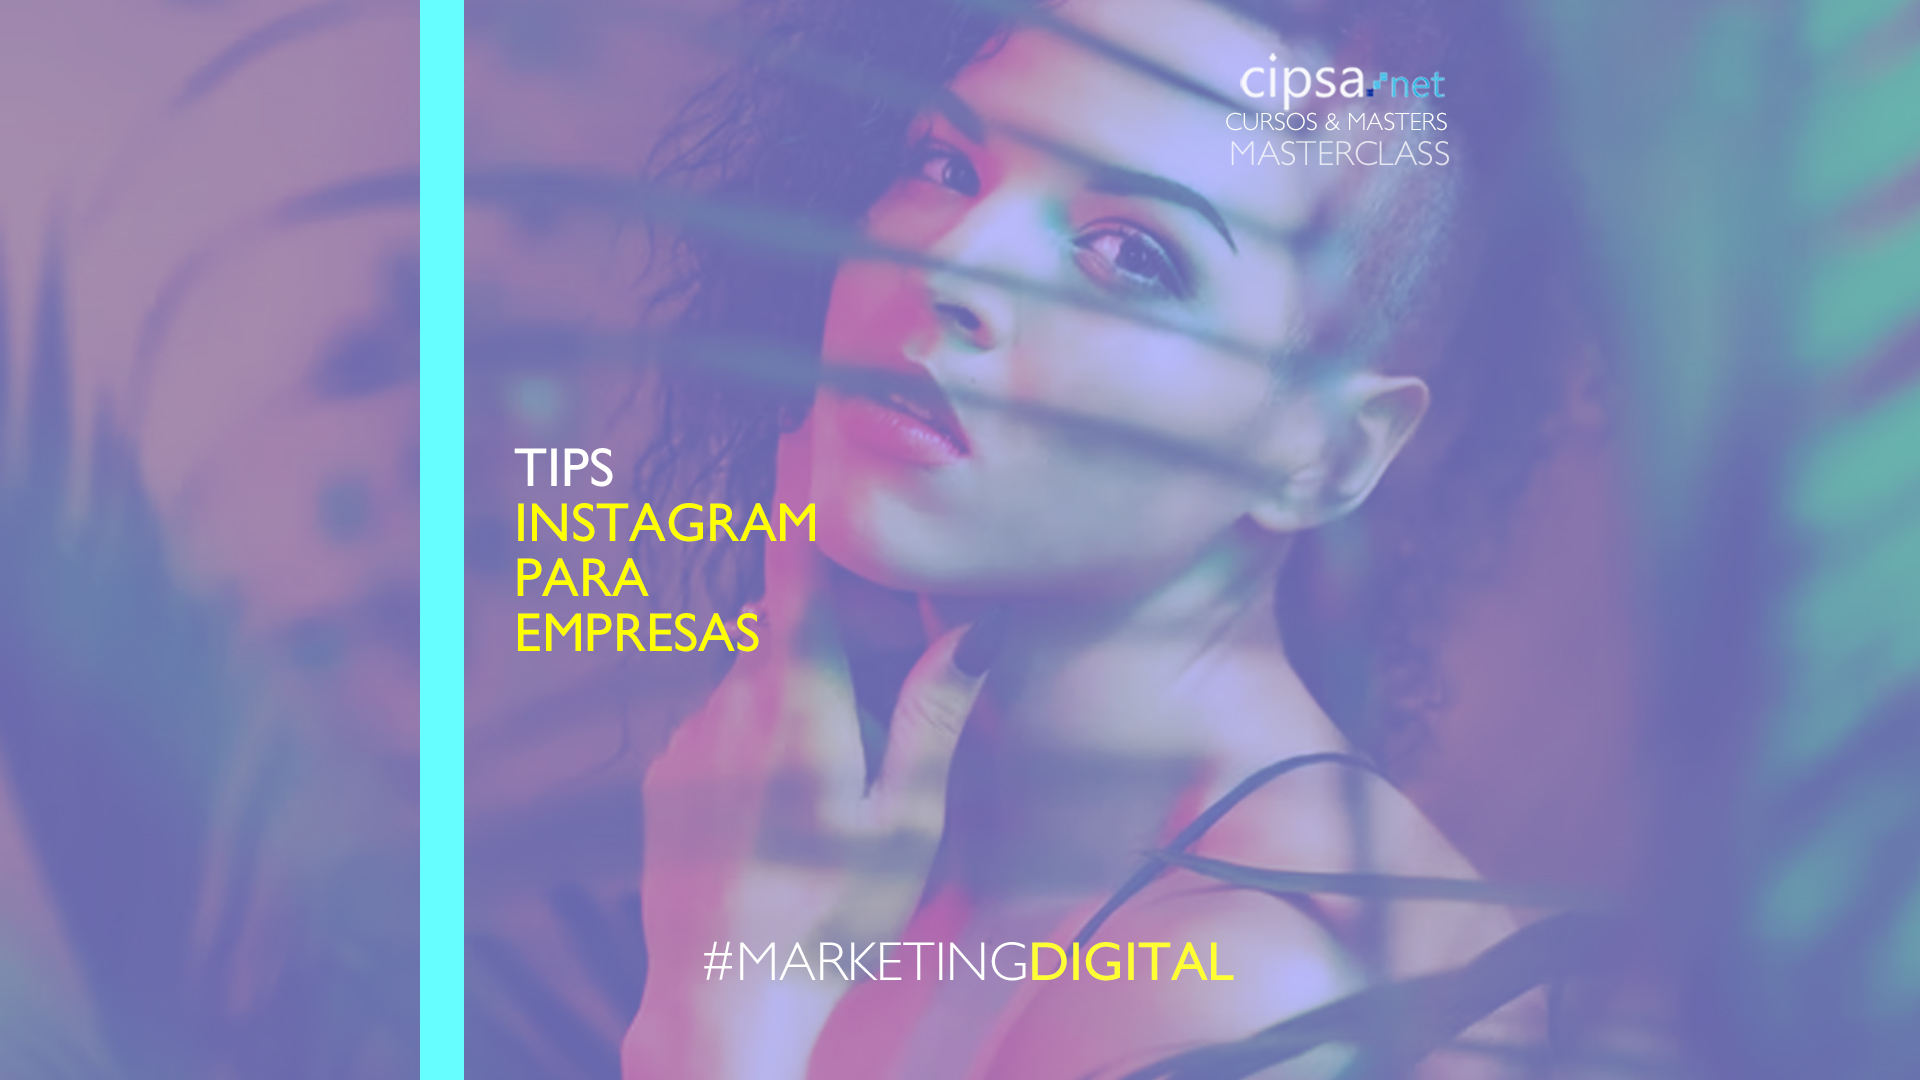 tips instagram para empresas inbound marketing